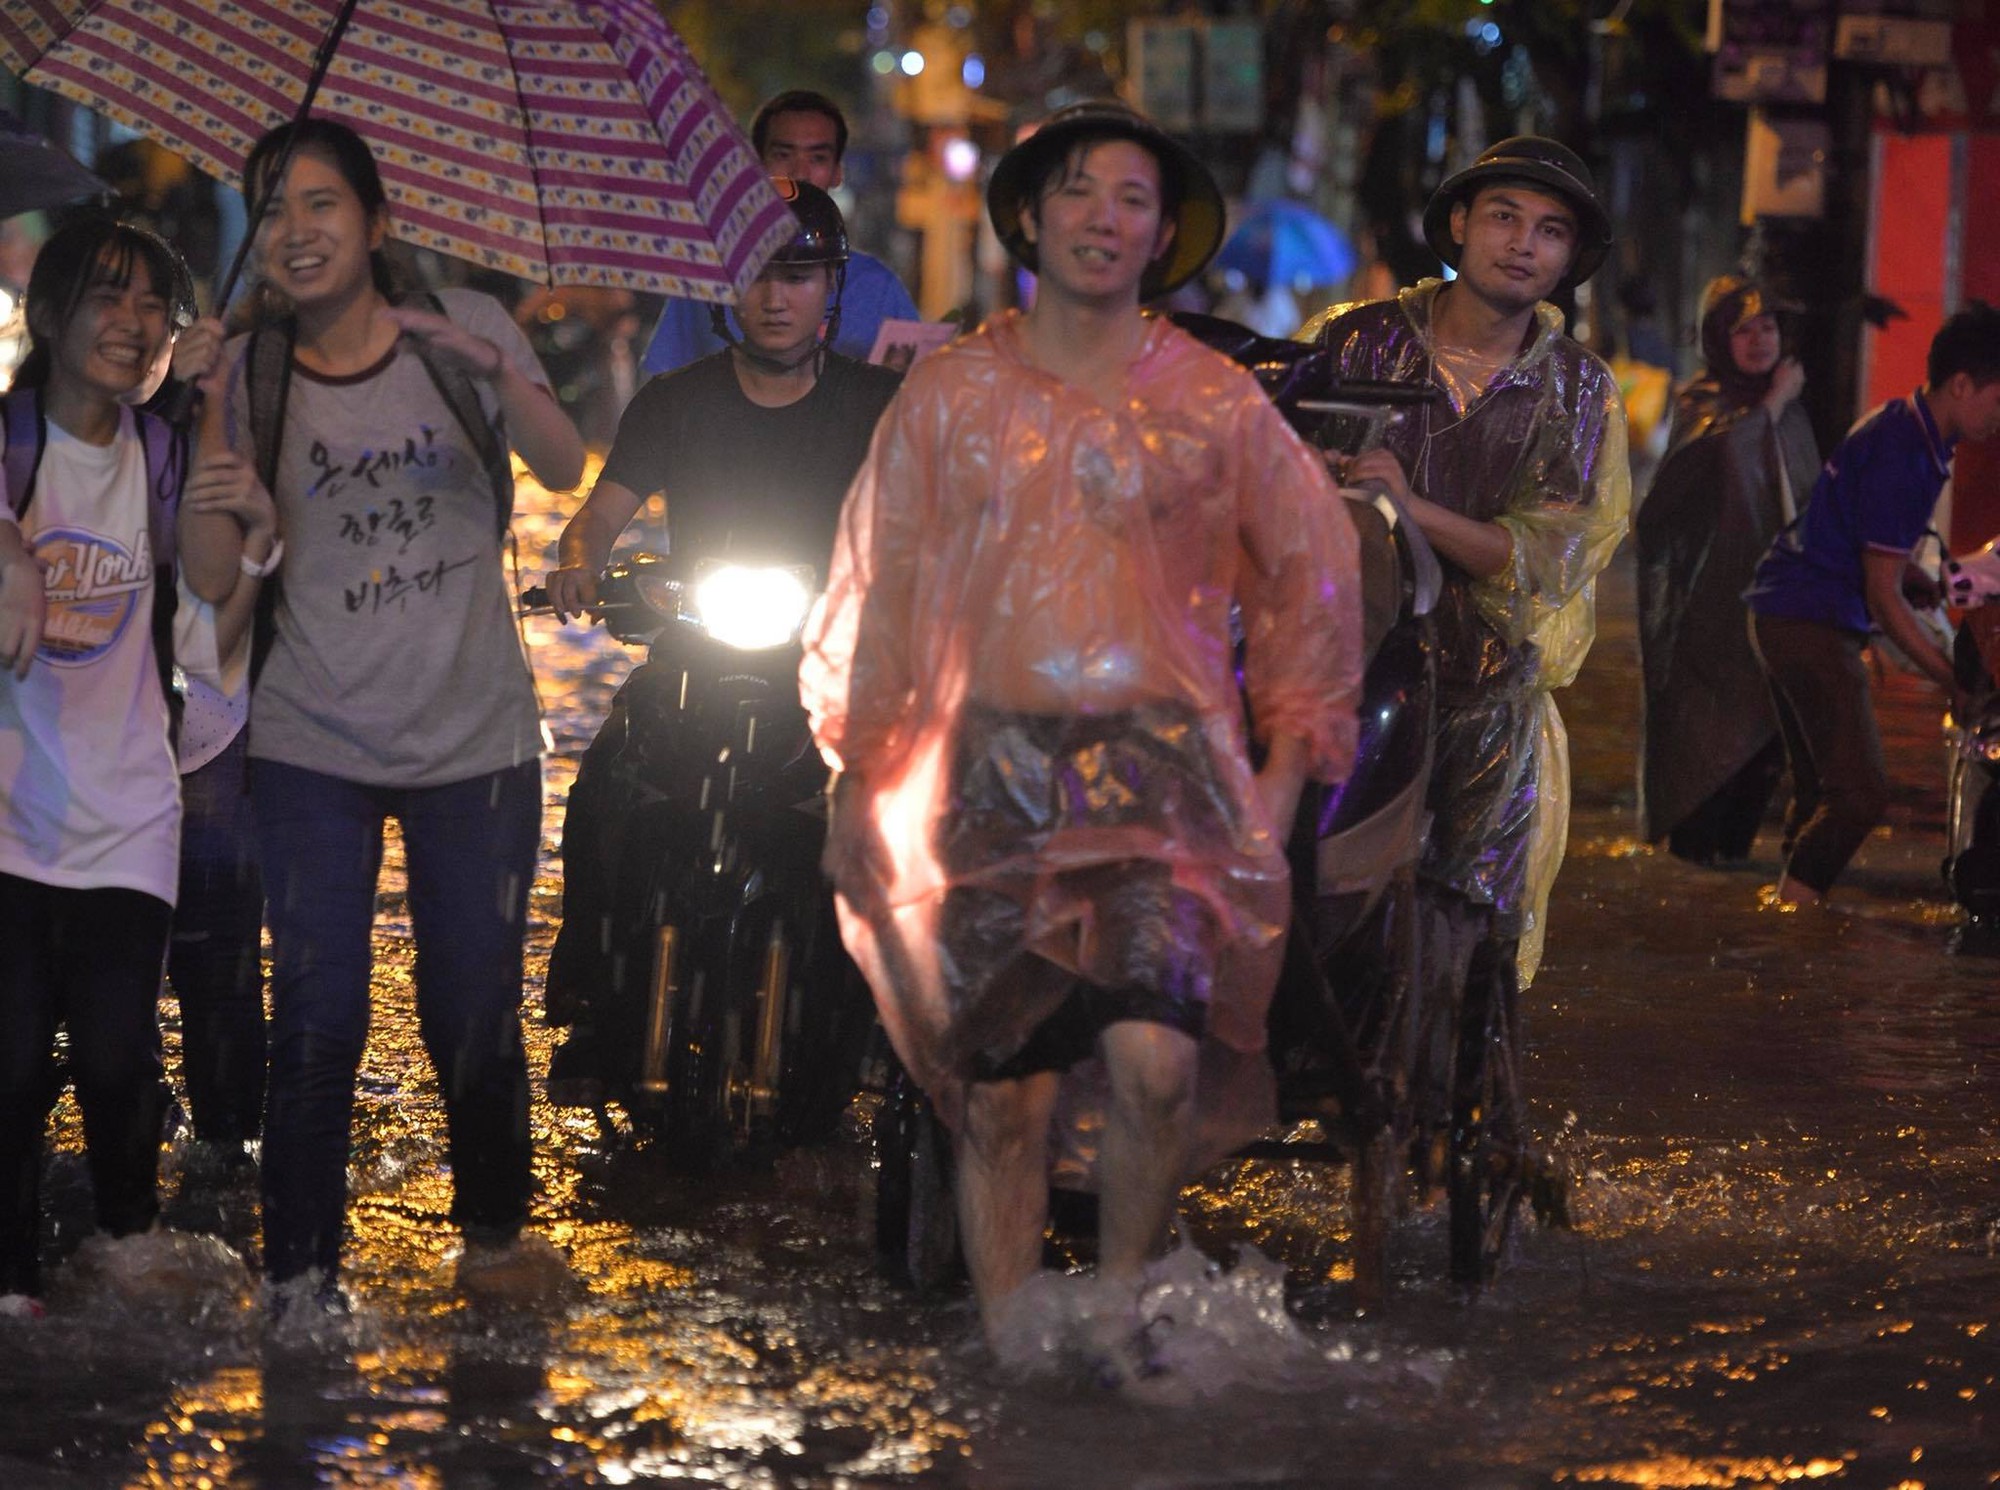 Dân công sở Hà Nội than trời trong ngày mưa ngập và tắc kinh hoàng: Có vài km mà mất tới 2, thậm chí 3 tiếng đồng hồ mới về đến nhà - Ảnh 6.